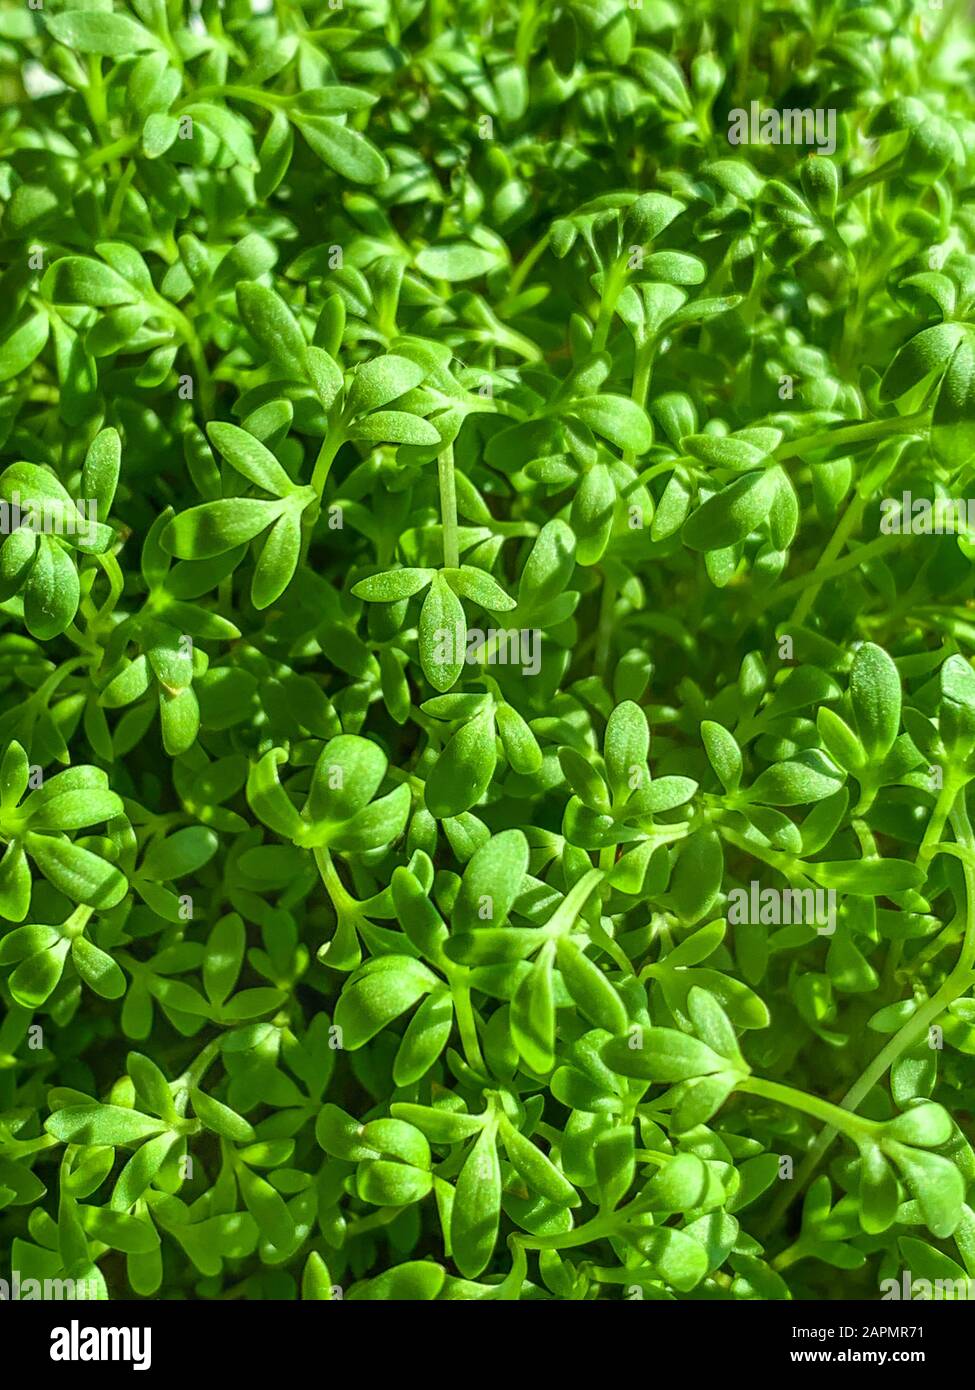 Le cresson de jardin part d'en haut. Cresson, aussi pepperwort ou peppergrass. Lepidium sativum, une herbe comestible à croissance rapide. Plantules vertes. Banque D'Images